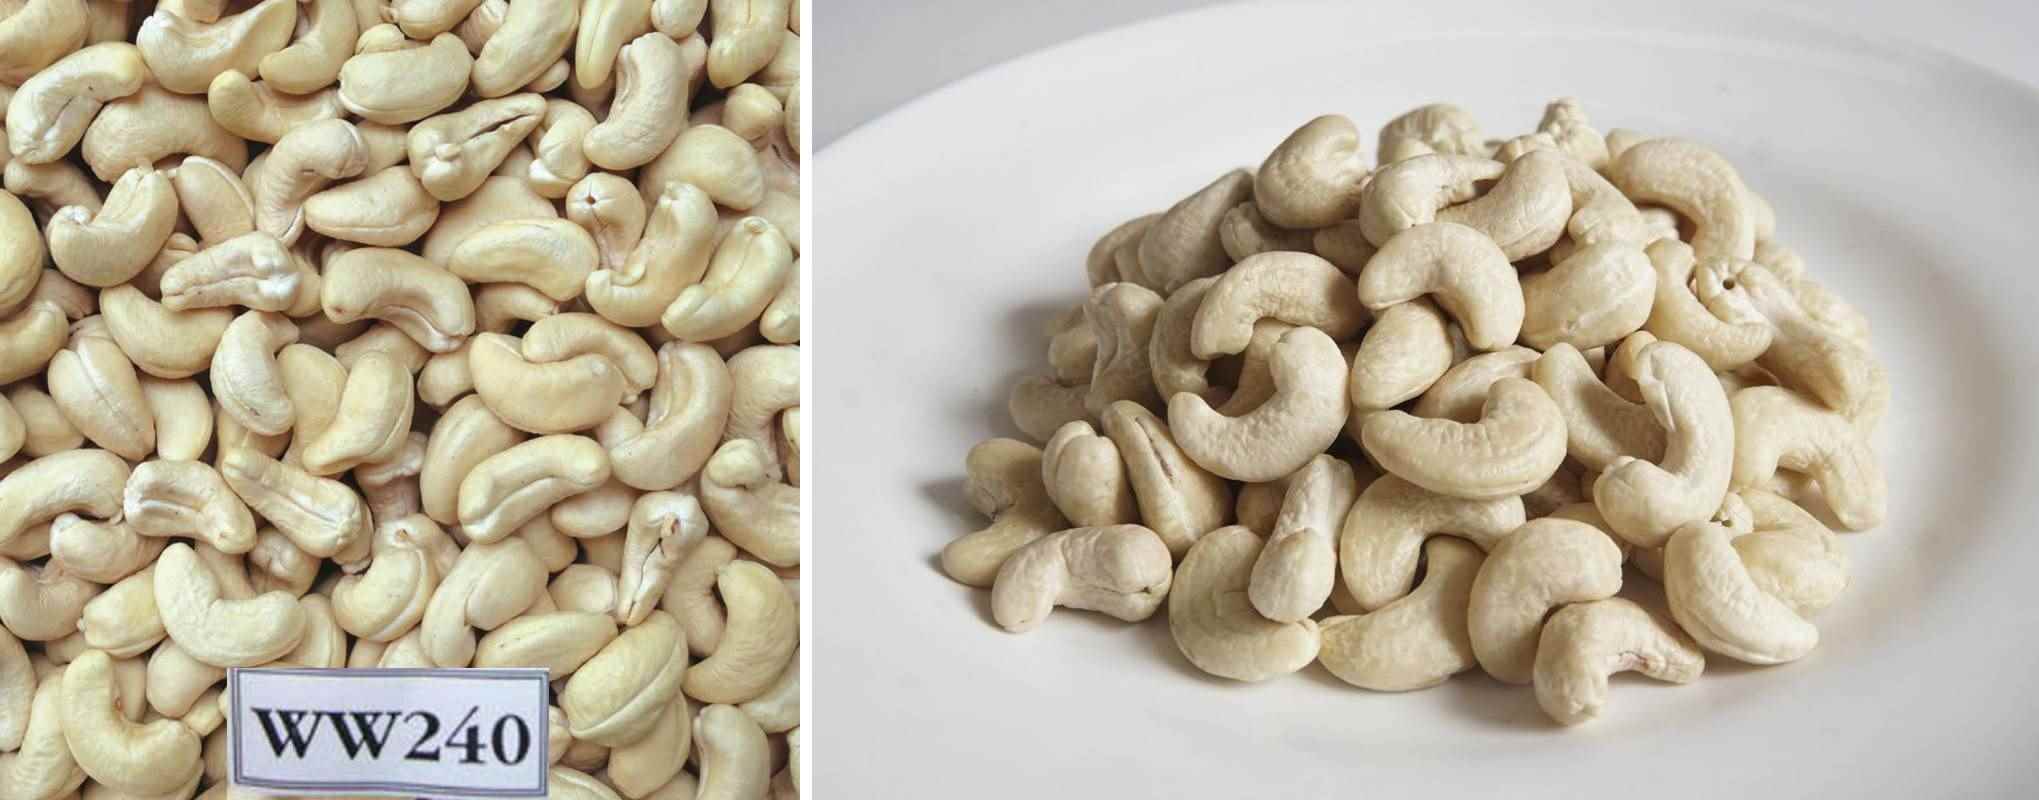 Vì hạt điều là loại hạt tương đối khó tiêu và ít chất xơ, nên Ăn Hạt Điều trước bữa ăn chính và ăn thêm nhiều rau xanh